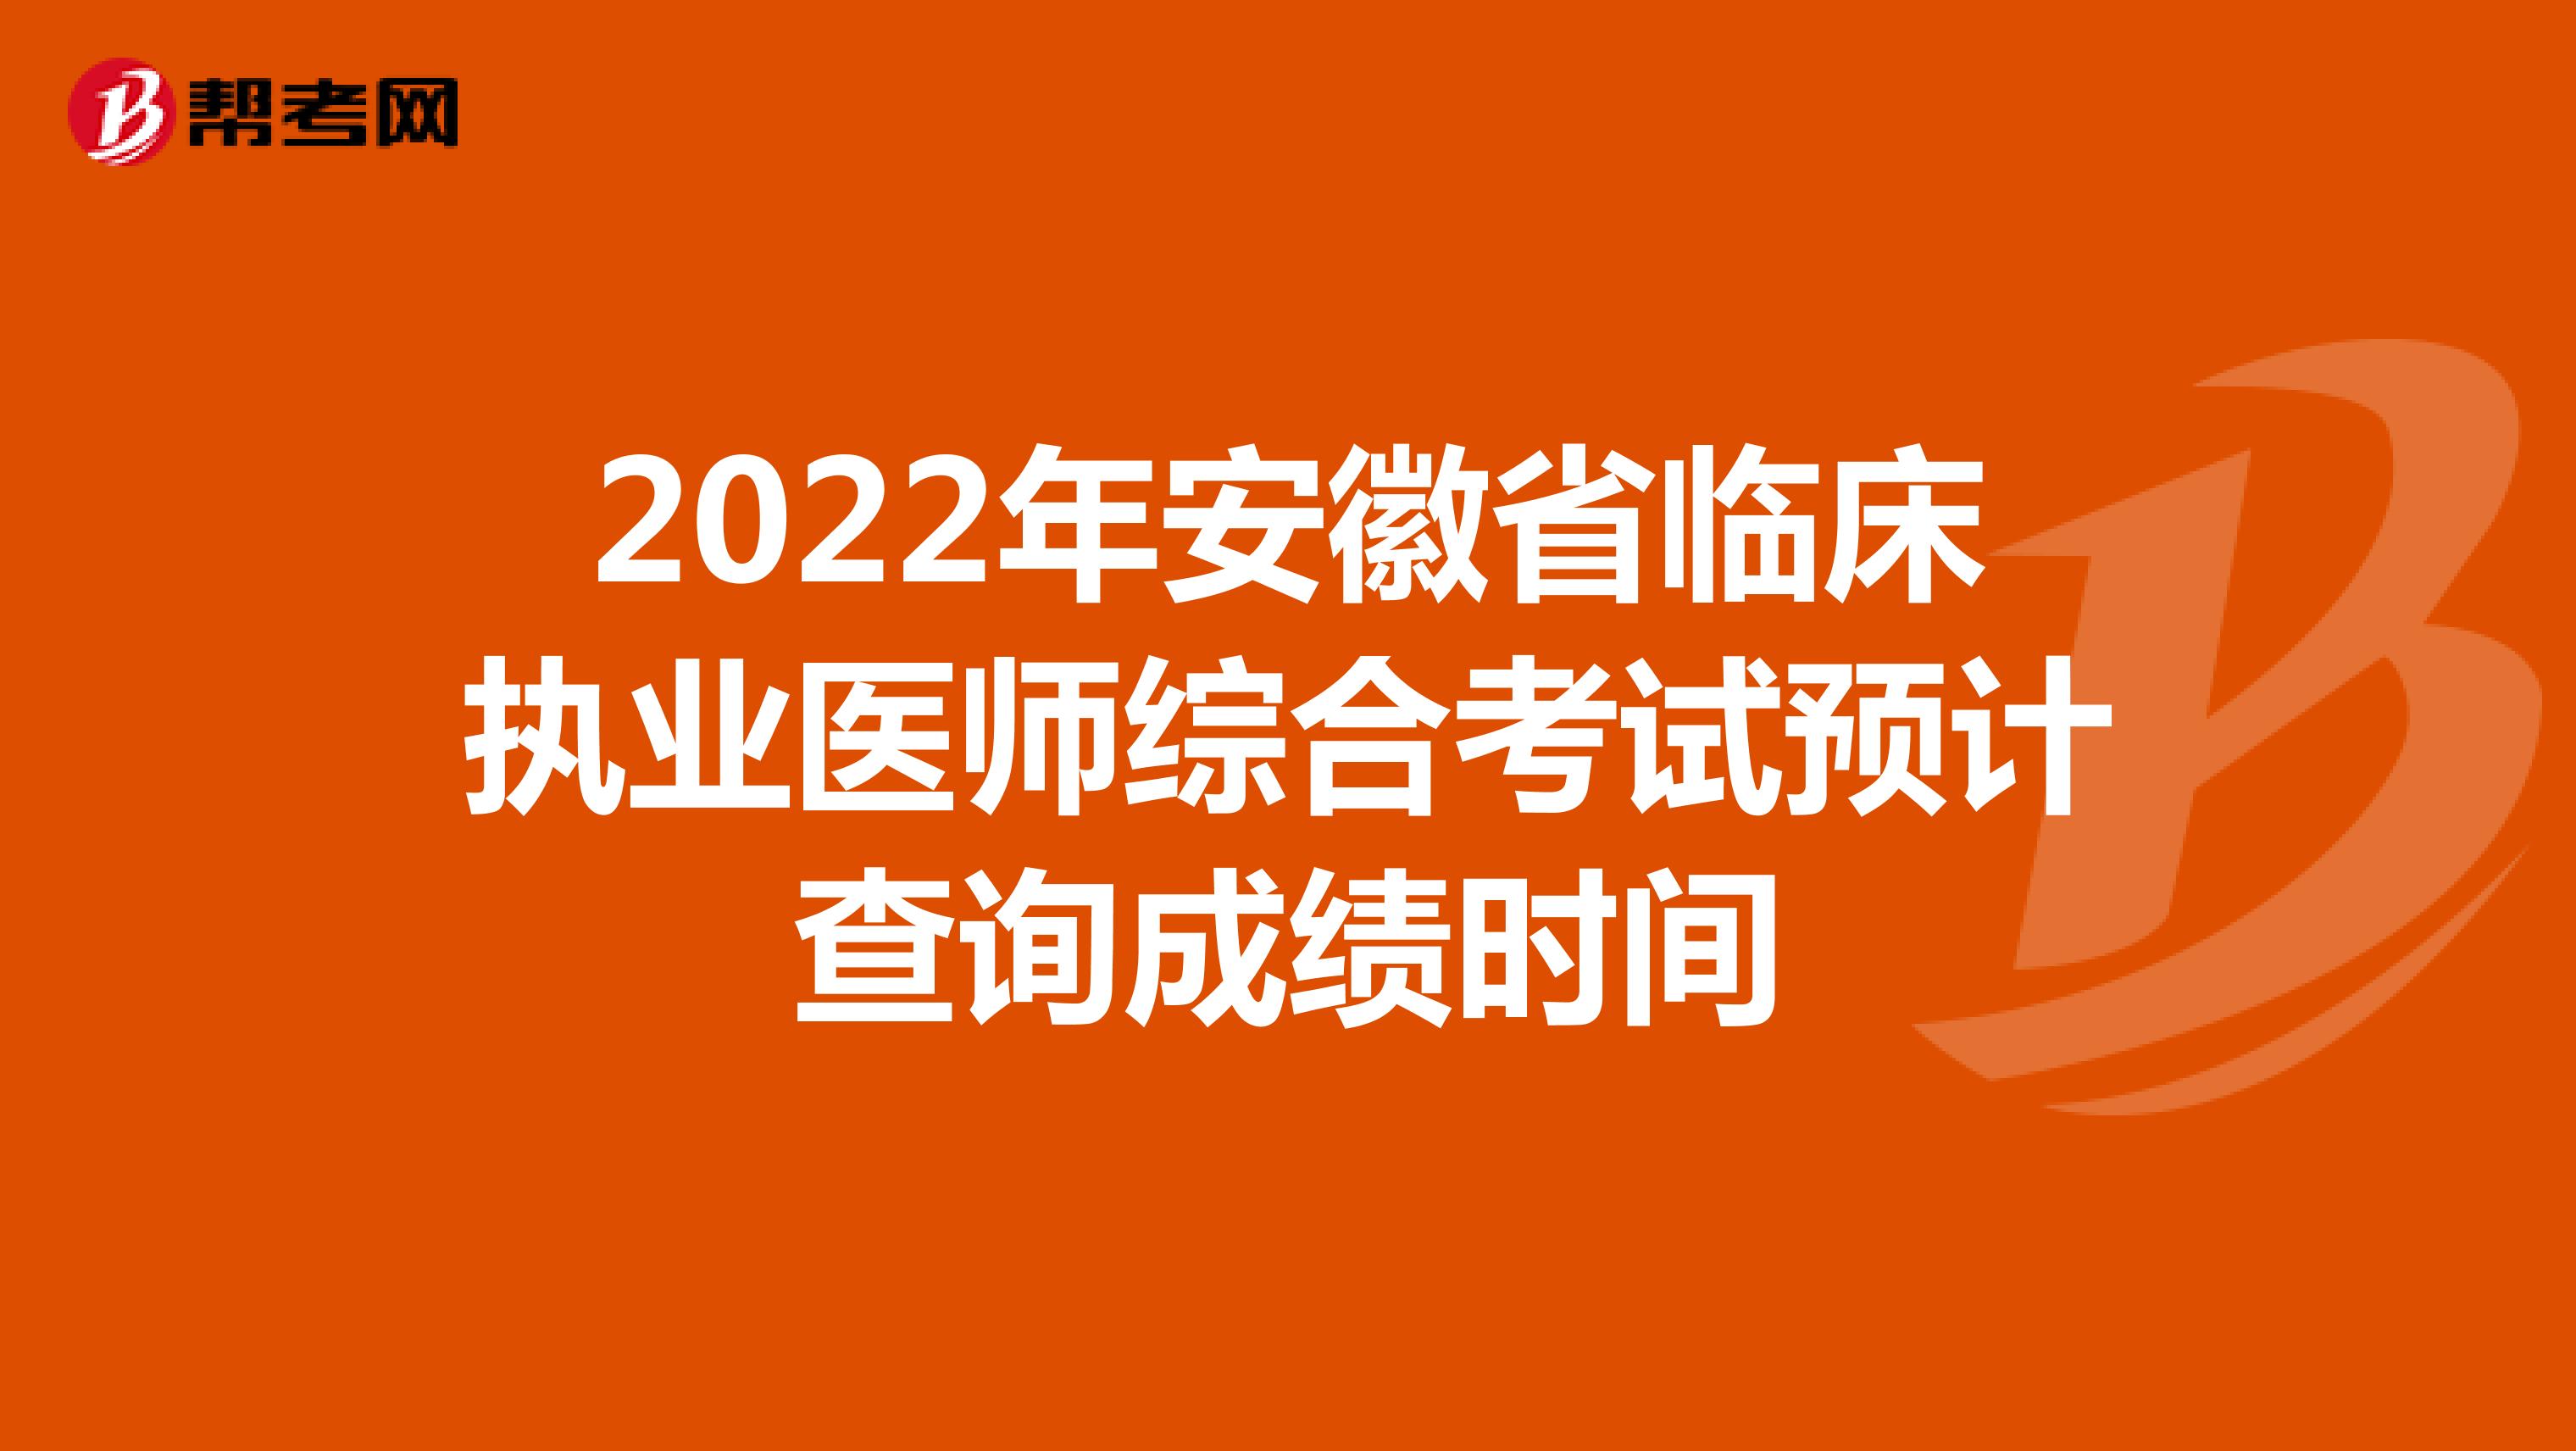 2022年安徽省临床执业医师综合考试预计查询成绩时间